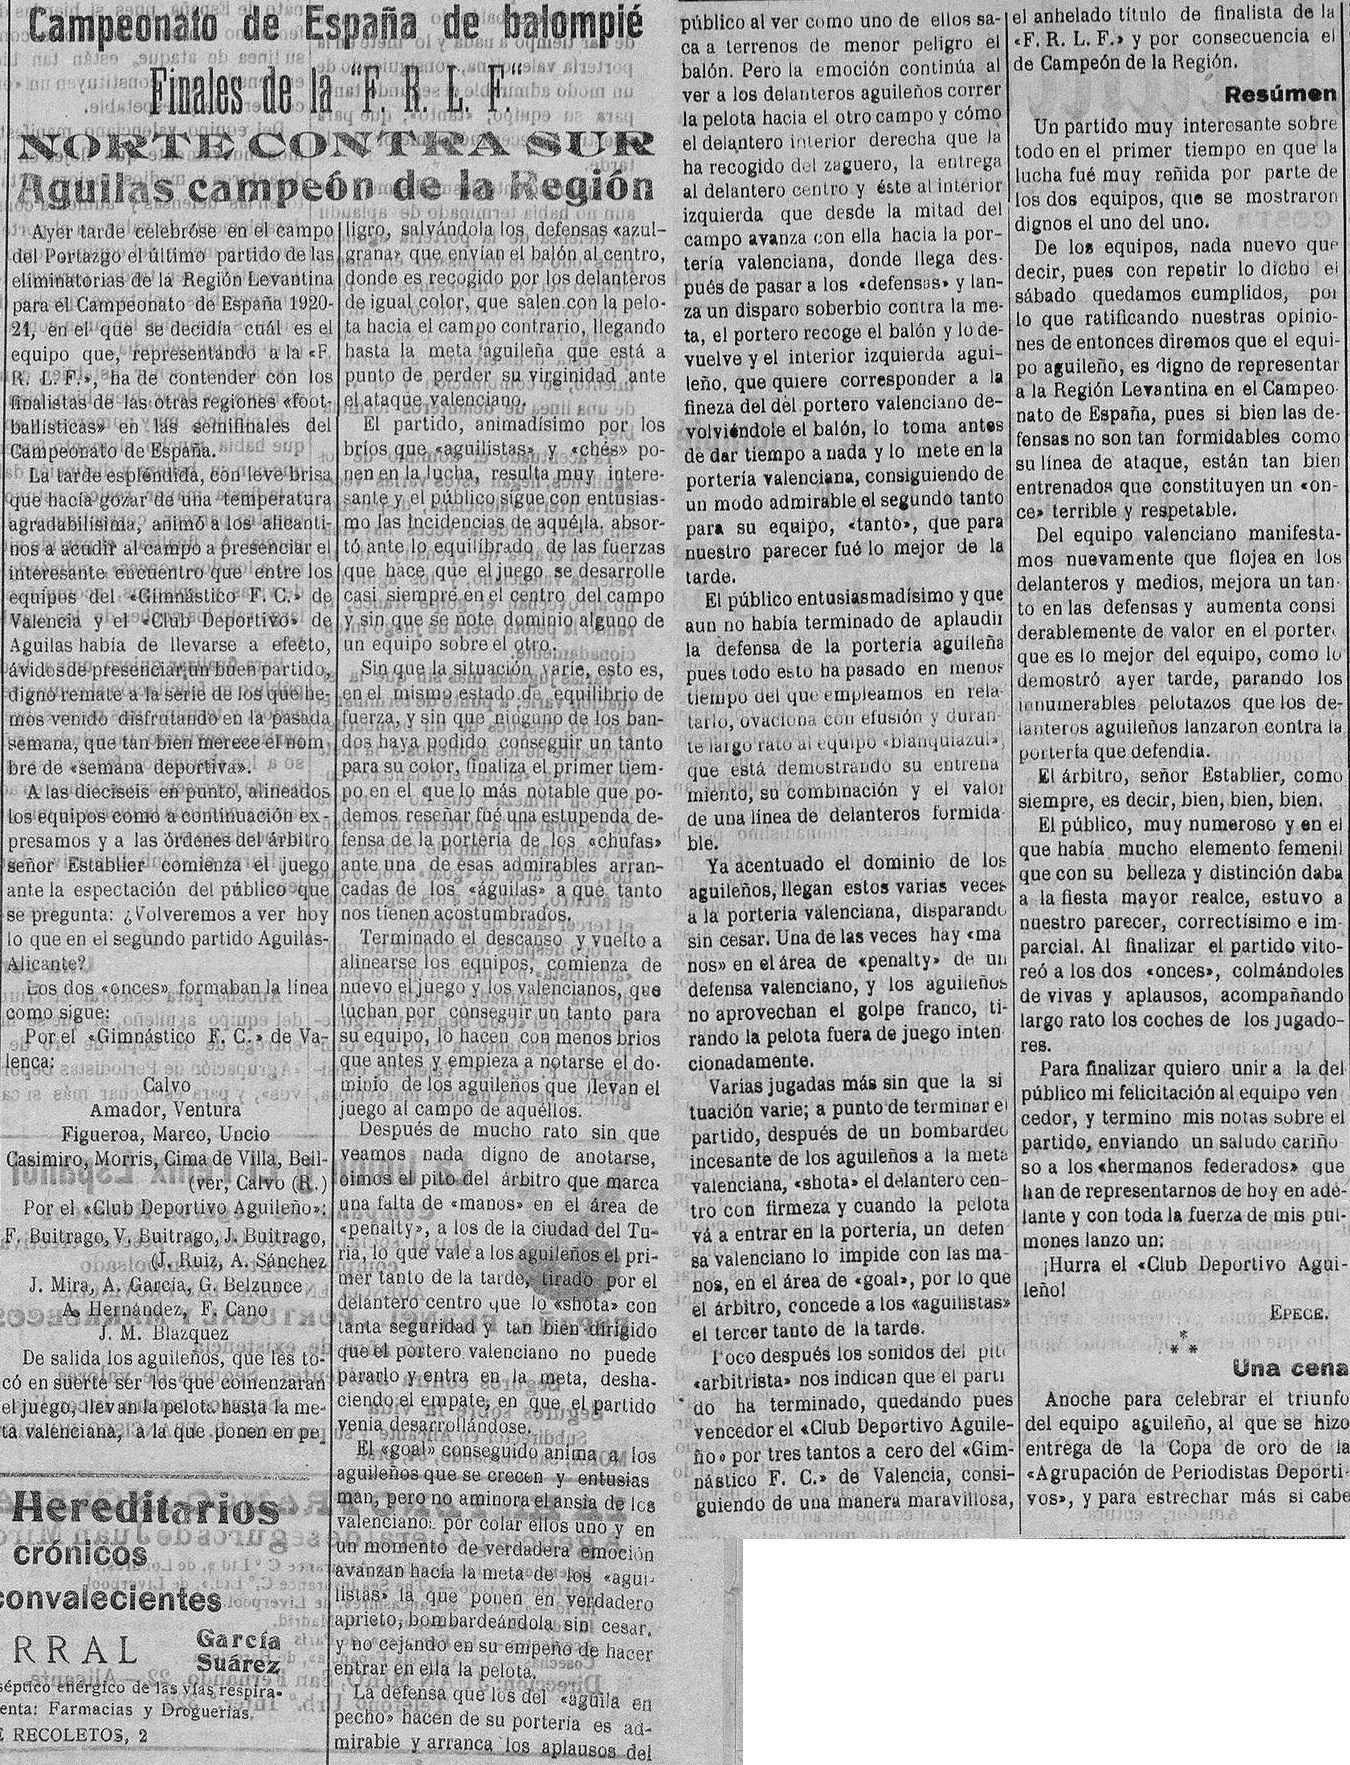 1920.03.14 (14 марта 1920), Гимнастико - Агиленьо, 0-3.jpg